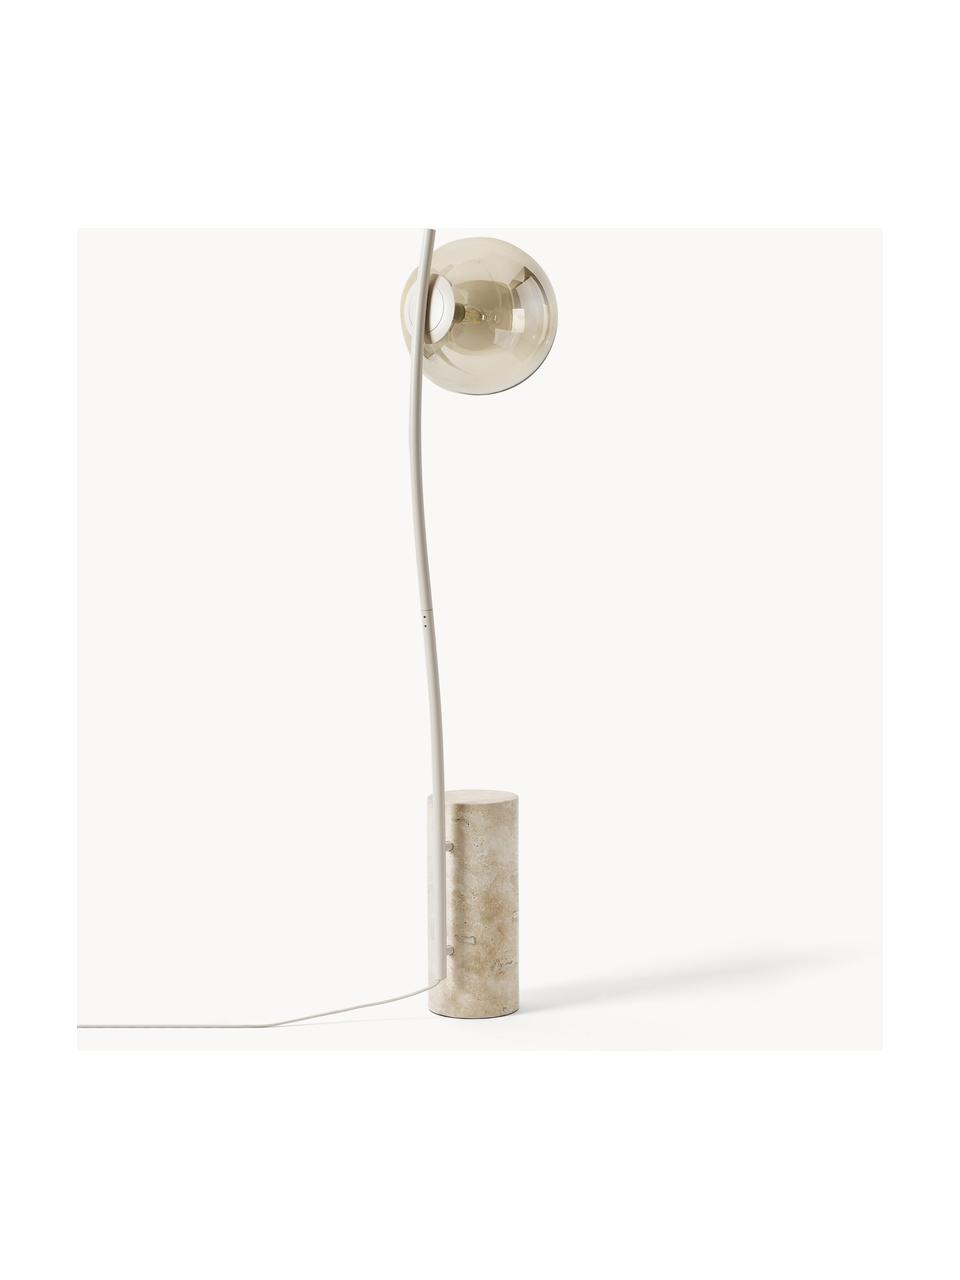 Kleine Stehlampe Cora mit Travertin-Fuß, Lampenschirm: Glas, Gestell: Stahl, beschichtet, Lampenfuß: Travertin, Beige, Travertin, H 127 cm